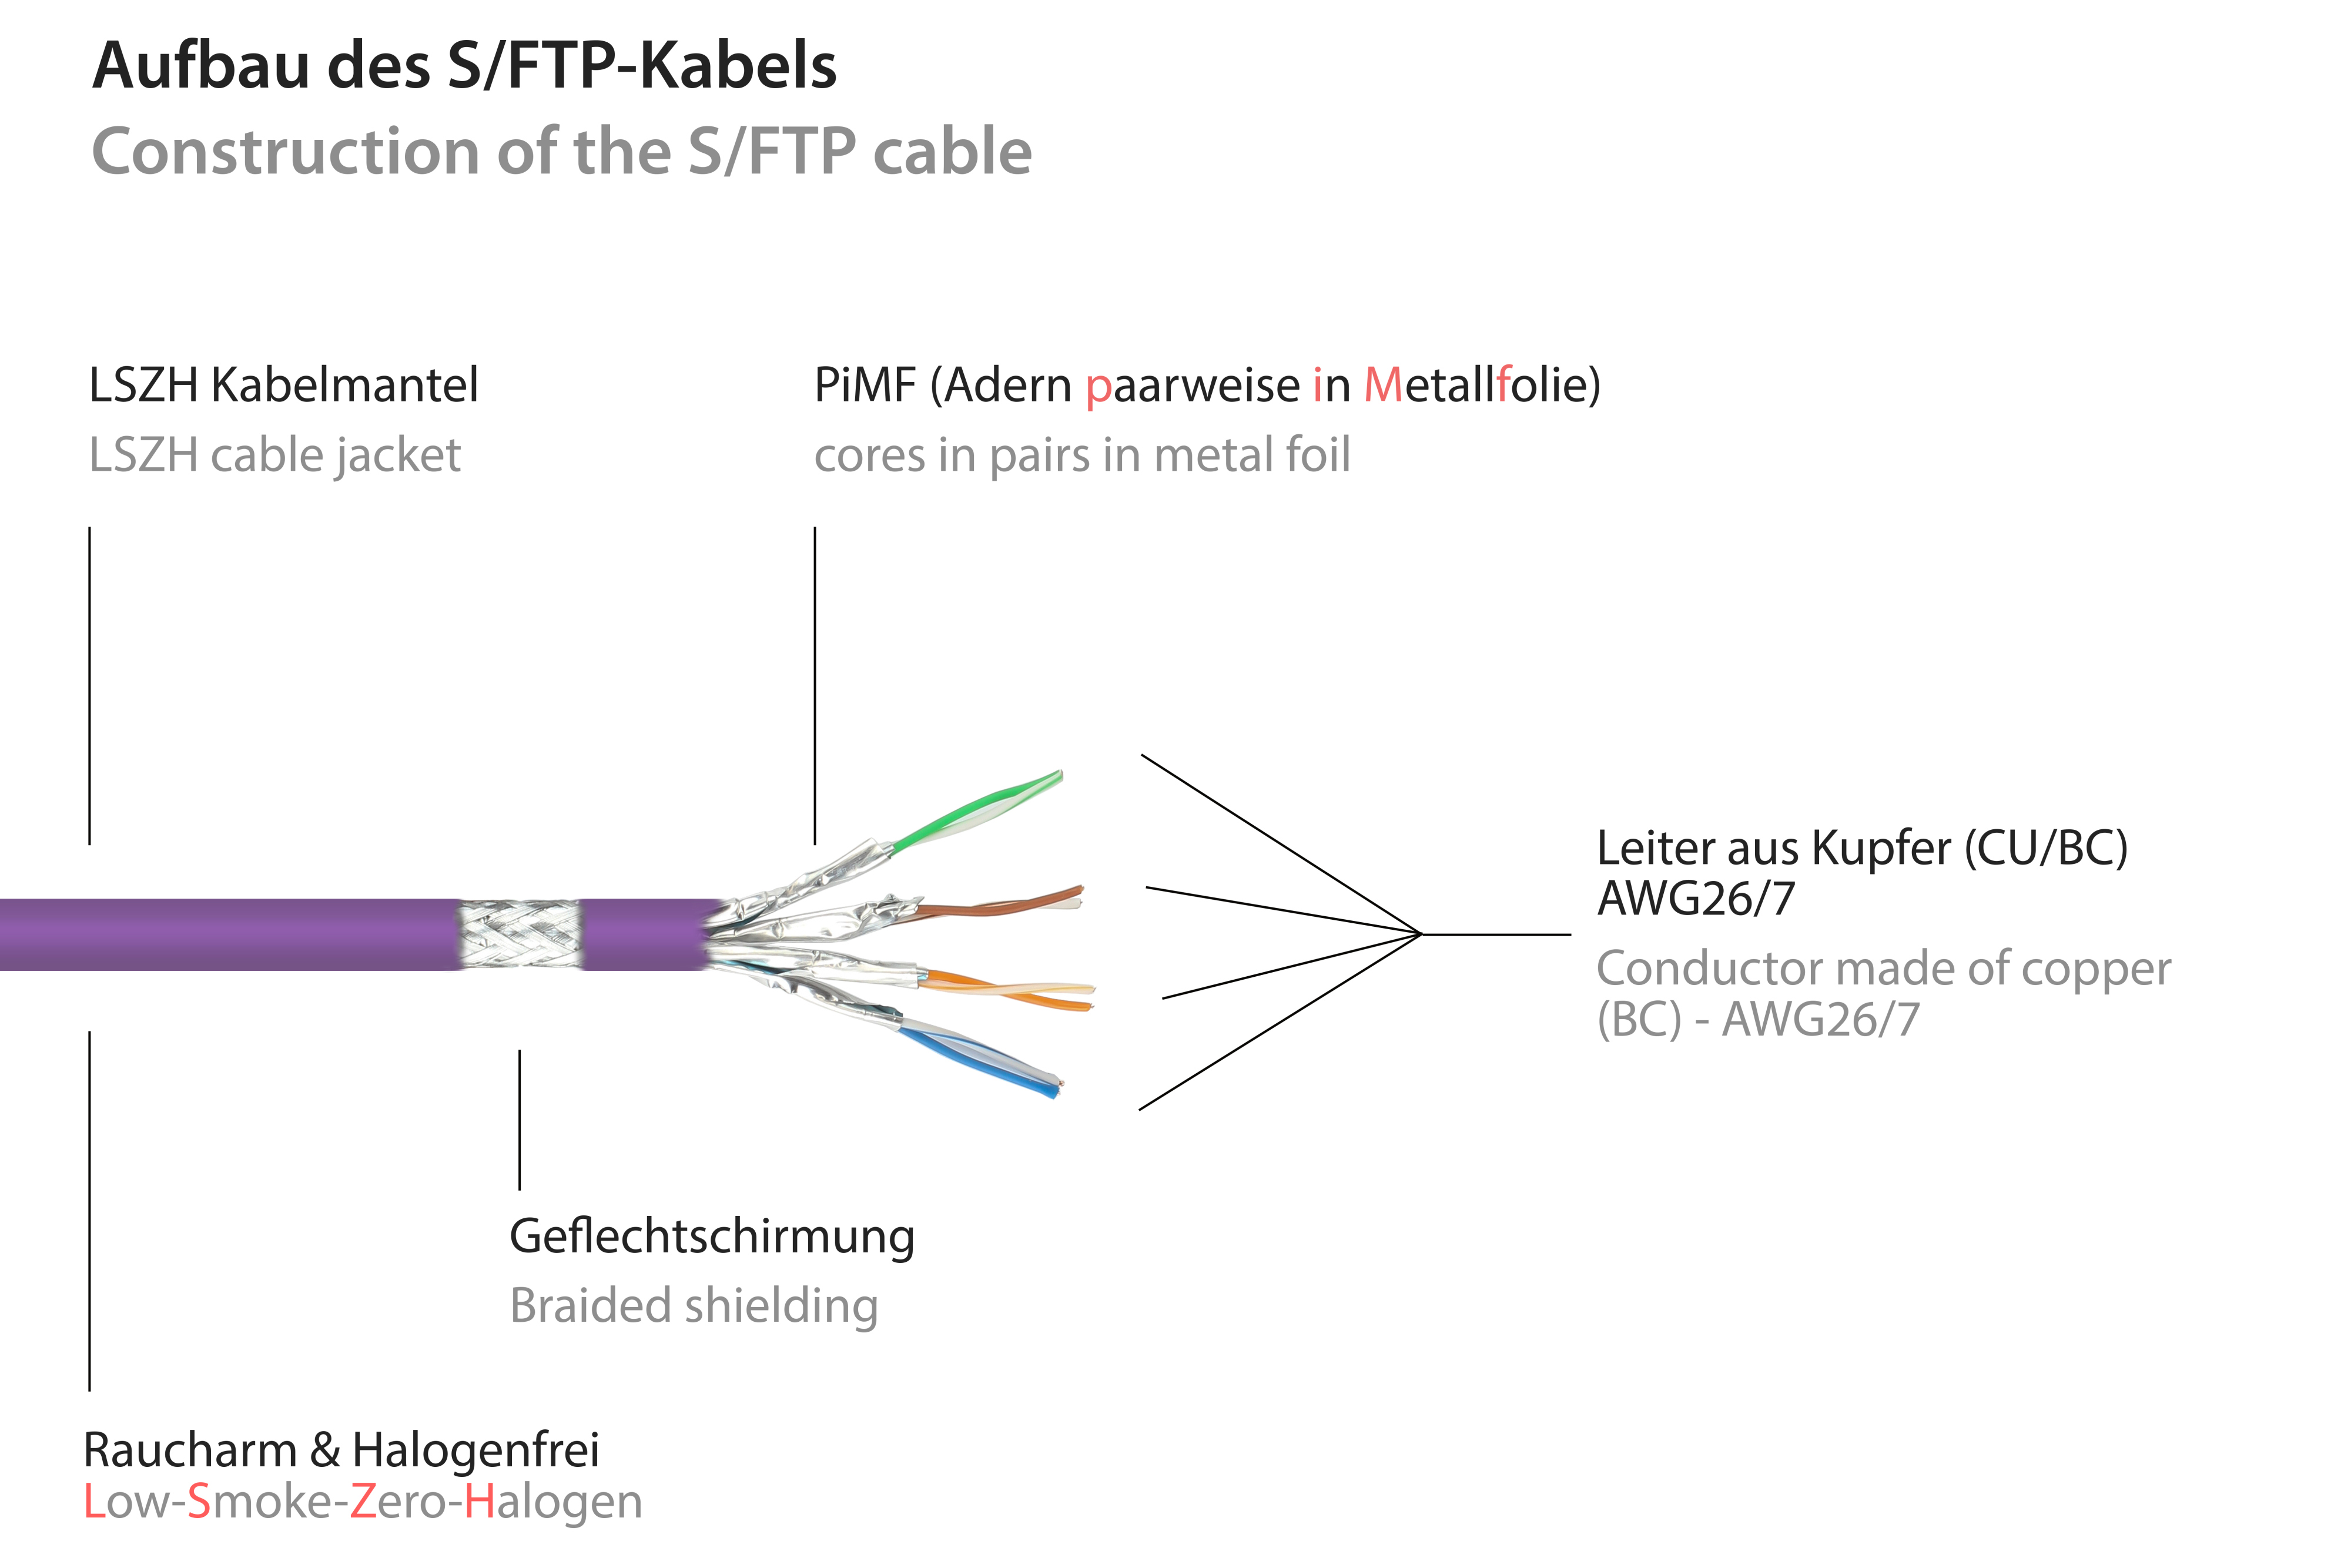 Netzwerkkabel, halogenfrei, violett, Rastnasenschutz S/FTP, 25 mit cm CONNECTIONS GOOD (RNS®), Patchkabel OFC,